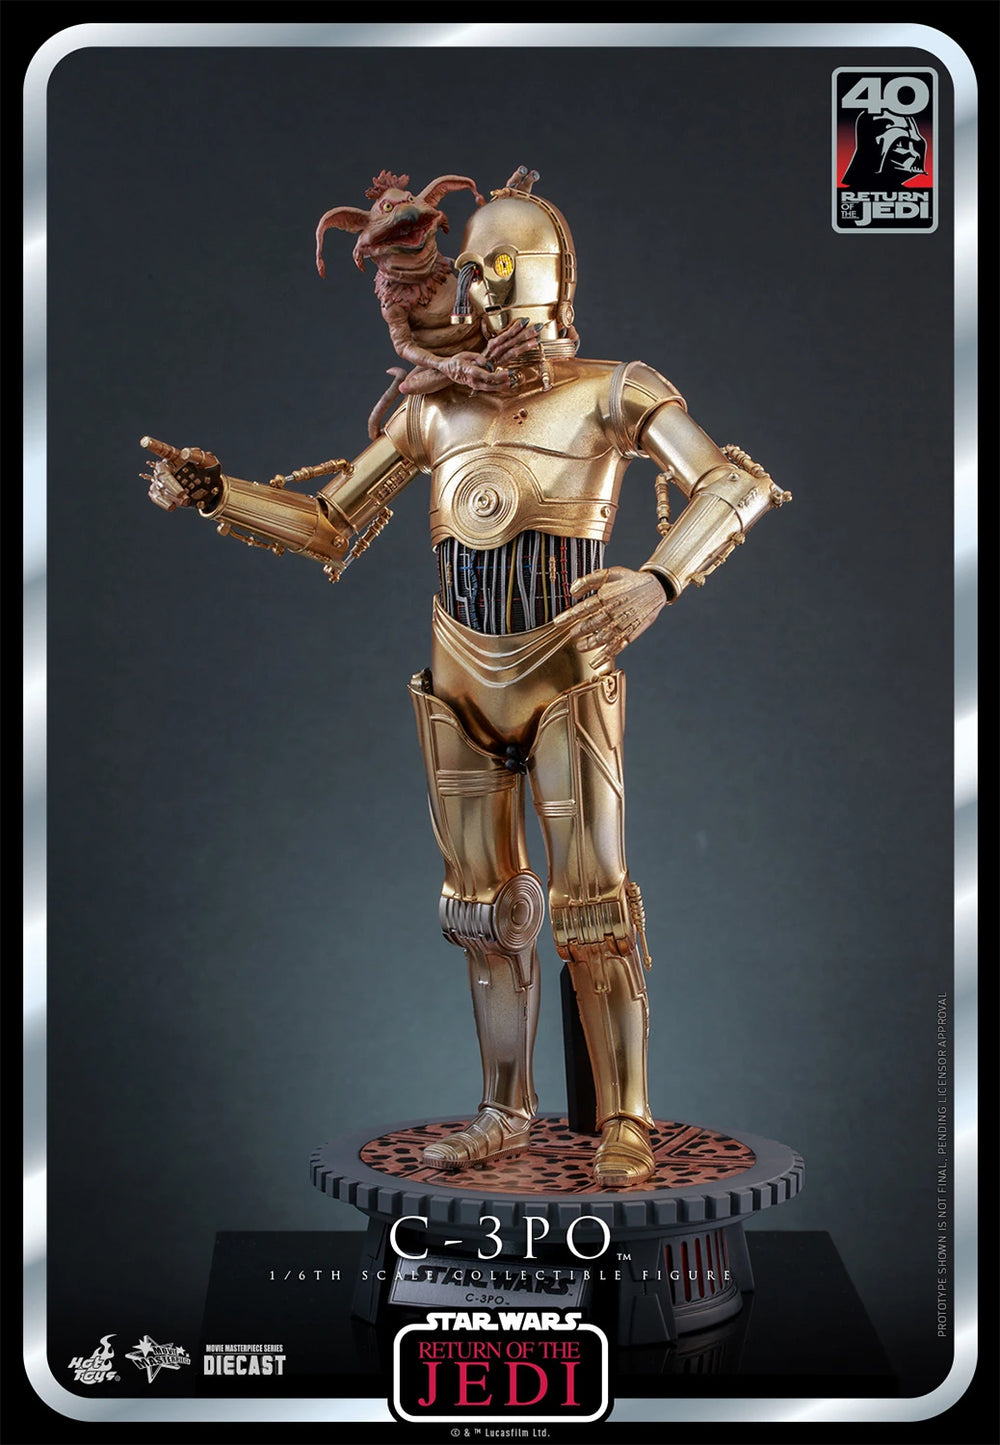 Hot Toys Star Wars: Return Of The Jedi 40 Aniversario - C3PO Escala 1/6